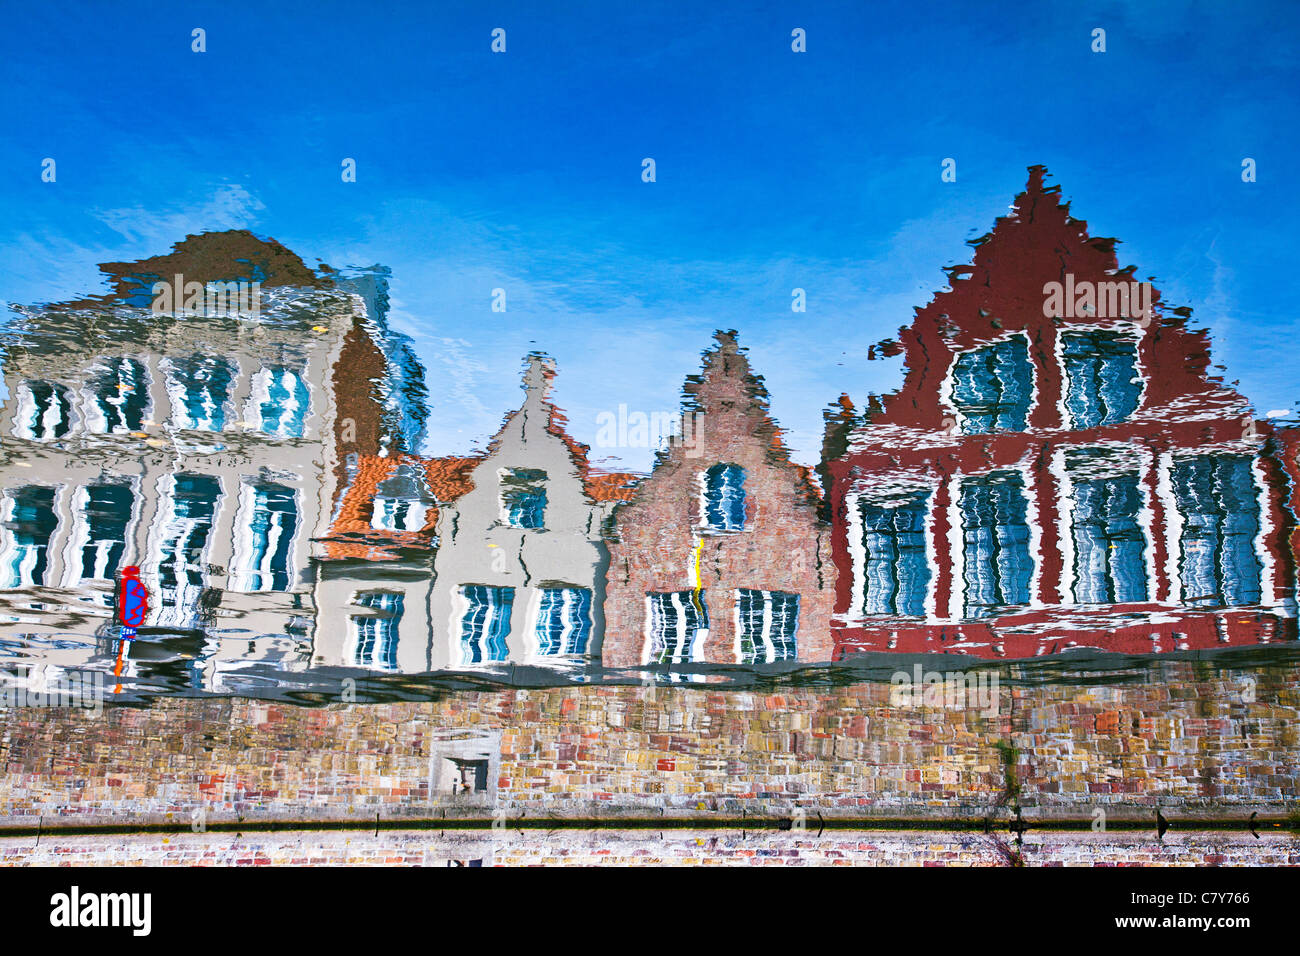 Reflexionen von typischen Häusern entlang des Kanals Langerei in Brugge (Brügge), Flandern, Belgien. Bild wurde invertiert. Stockfoto